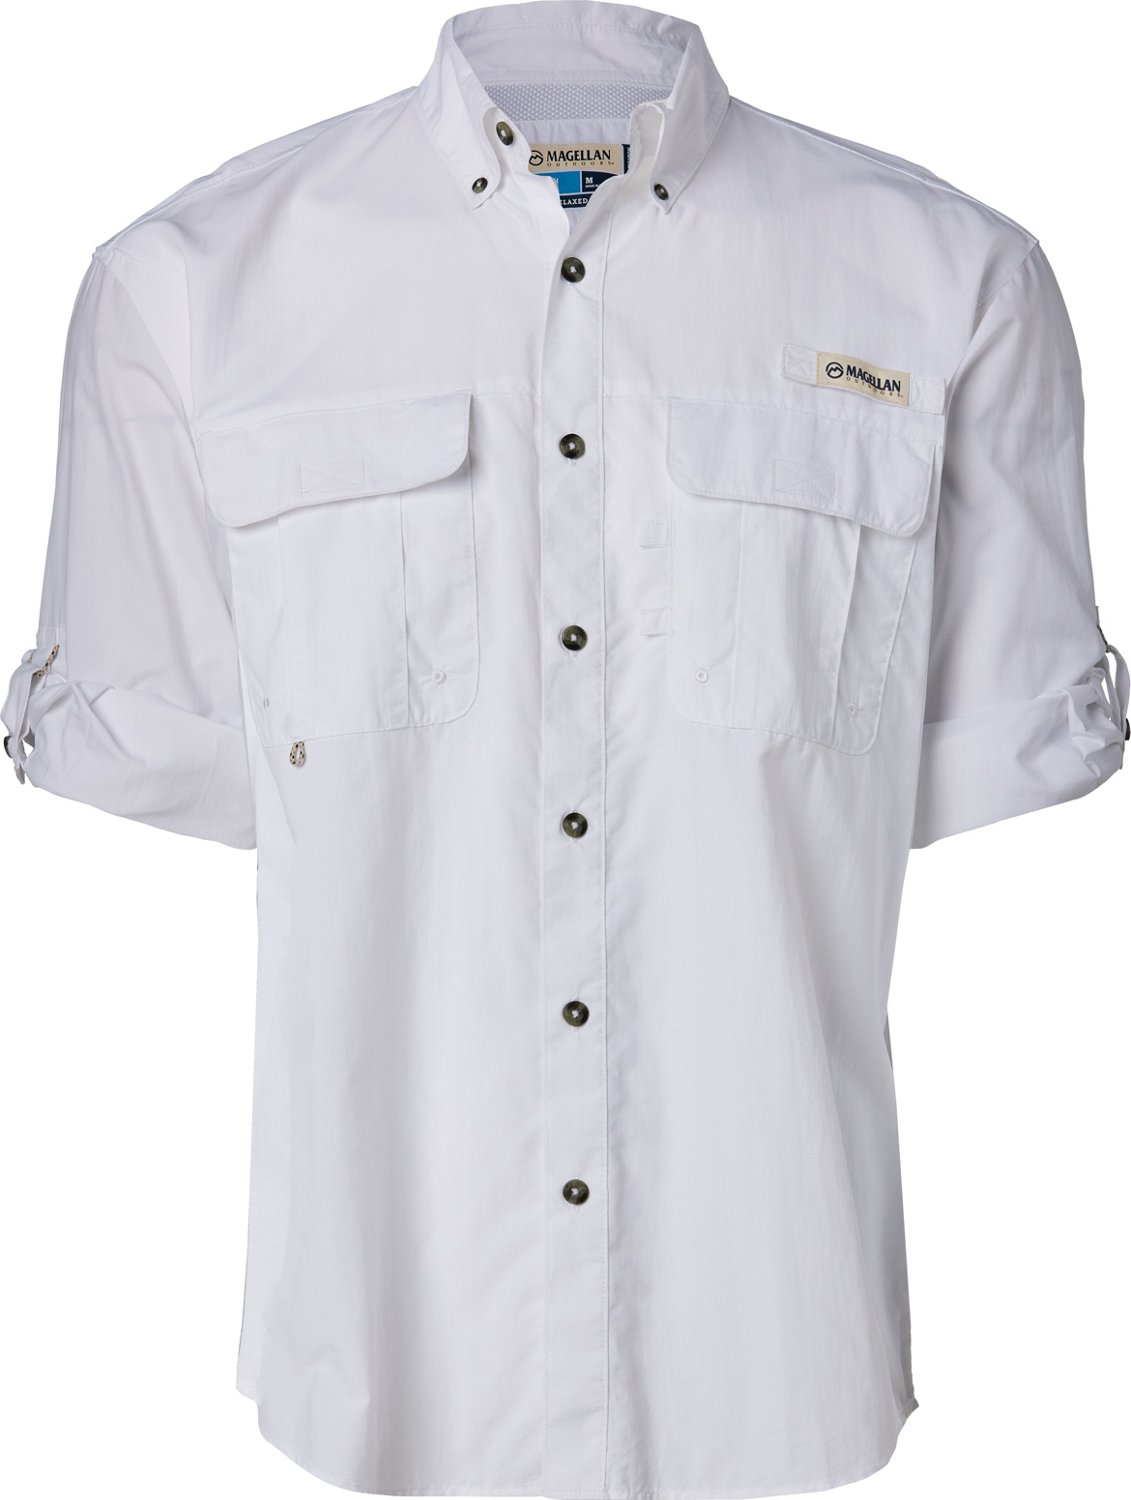 Magellan-Long-Sleeve-Fishing-Shirt